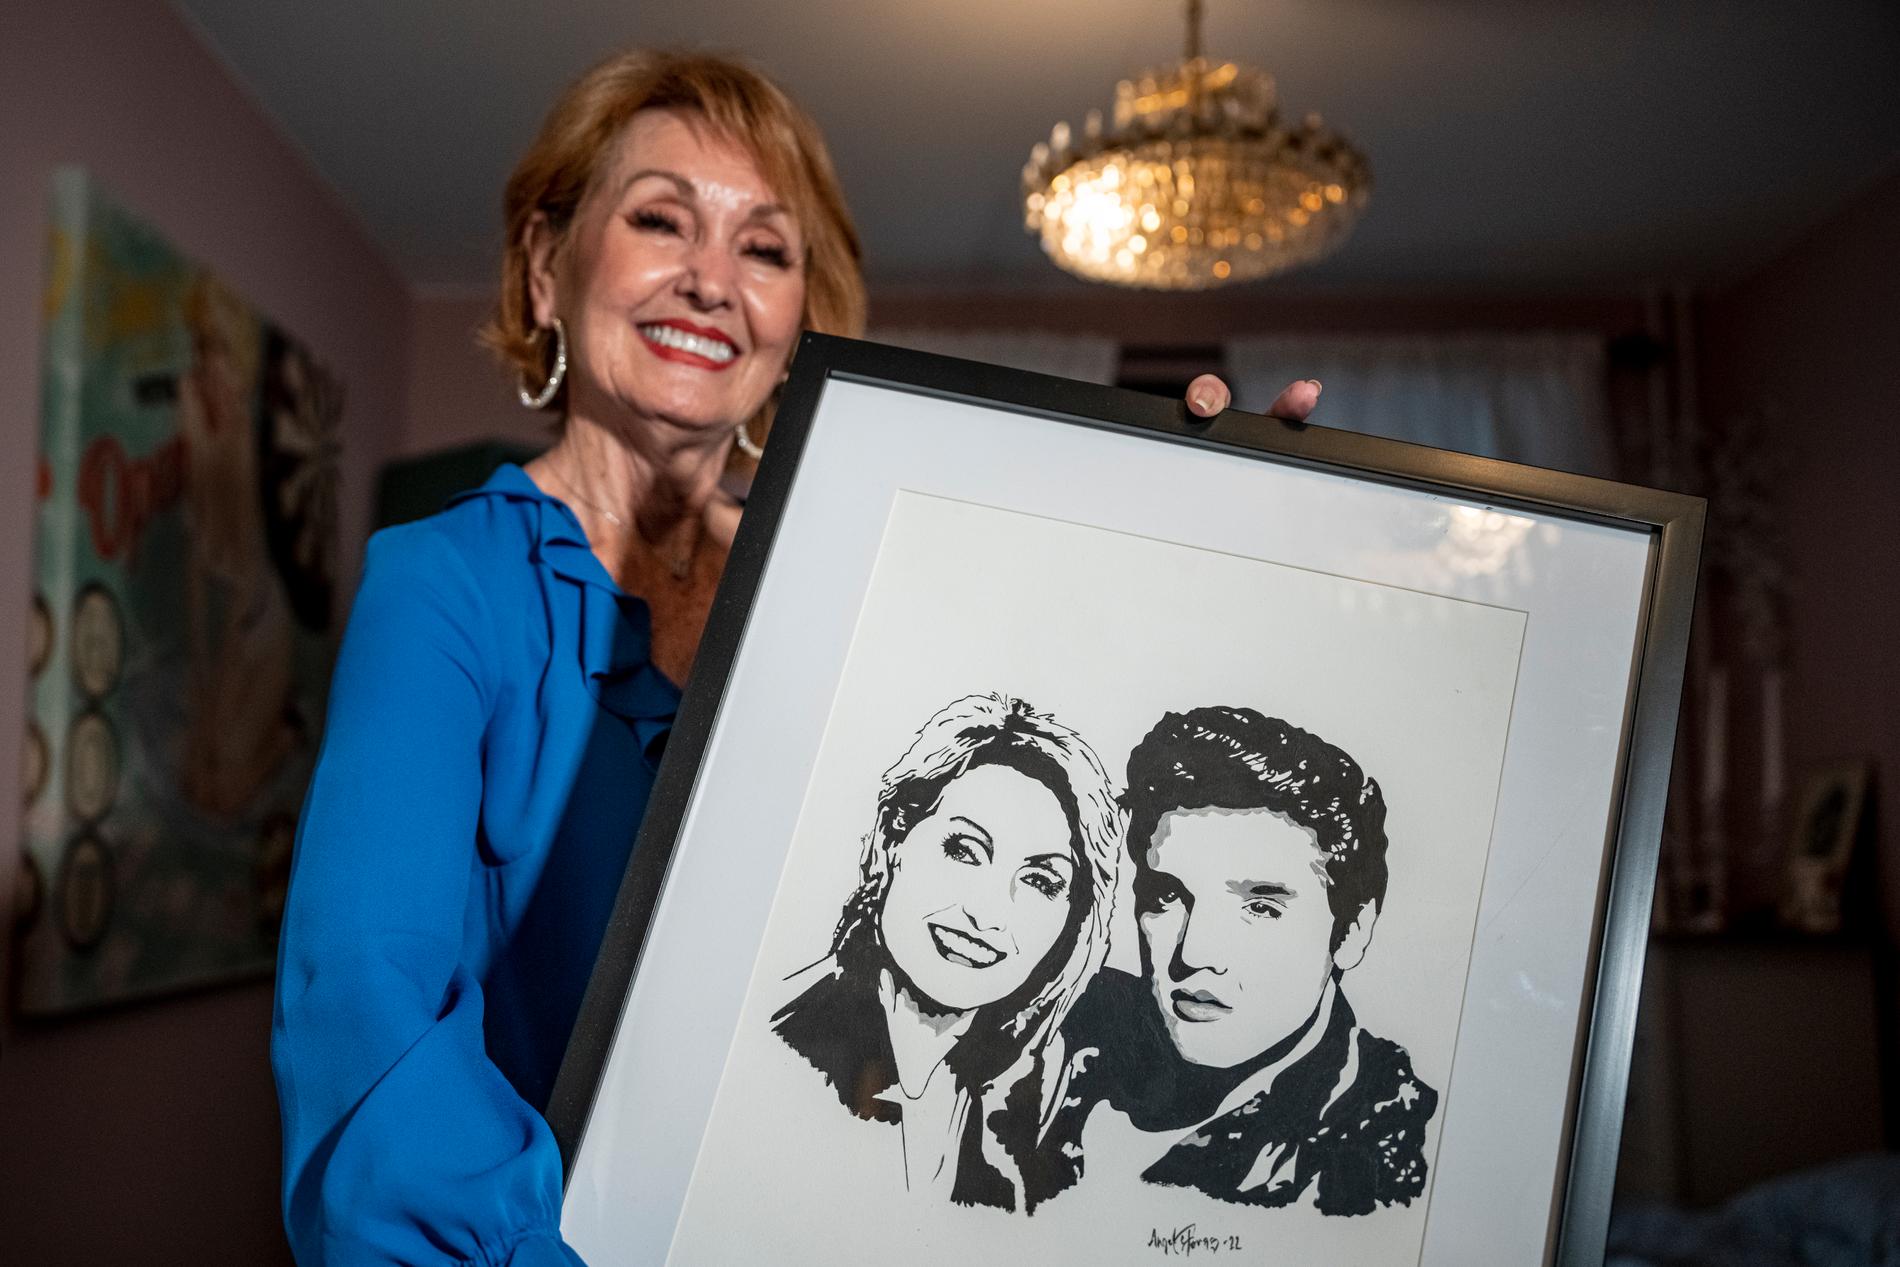 Efter en föreställning fick Donna en tavla föreställande henne och Elvis som konstnären Angela Fors målat.